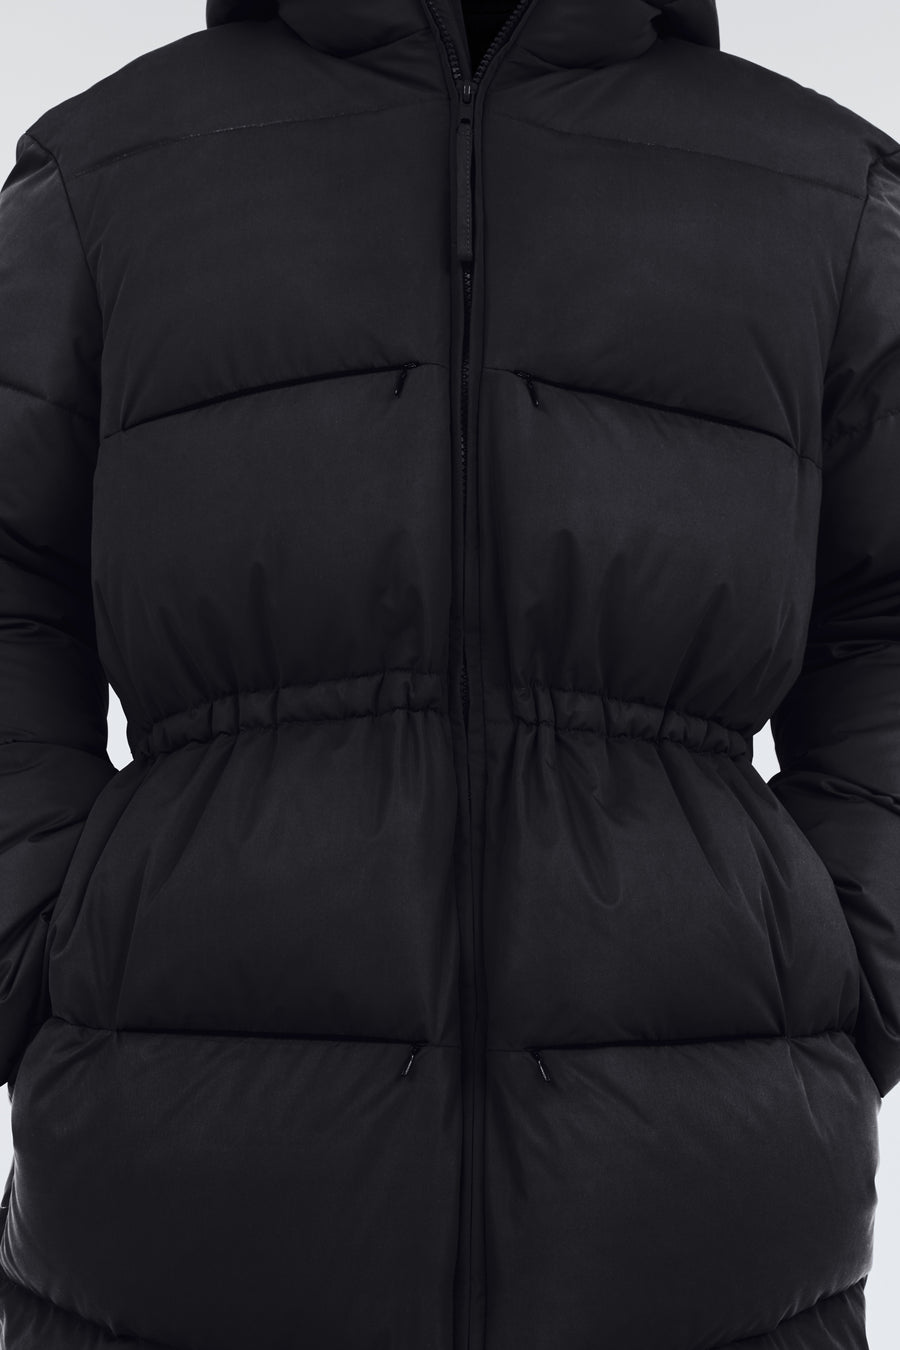 Swiss Waste Jacket – long, black